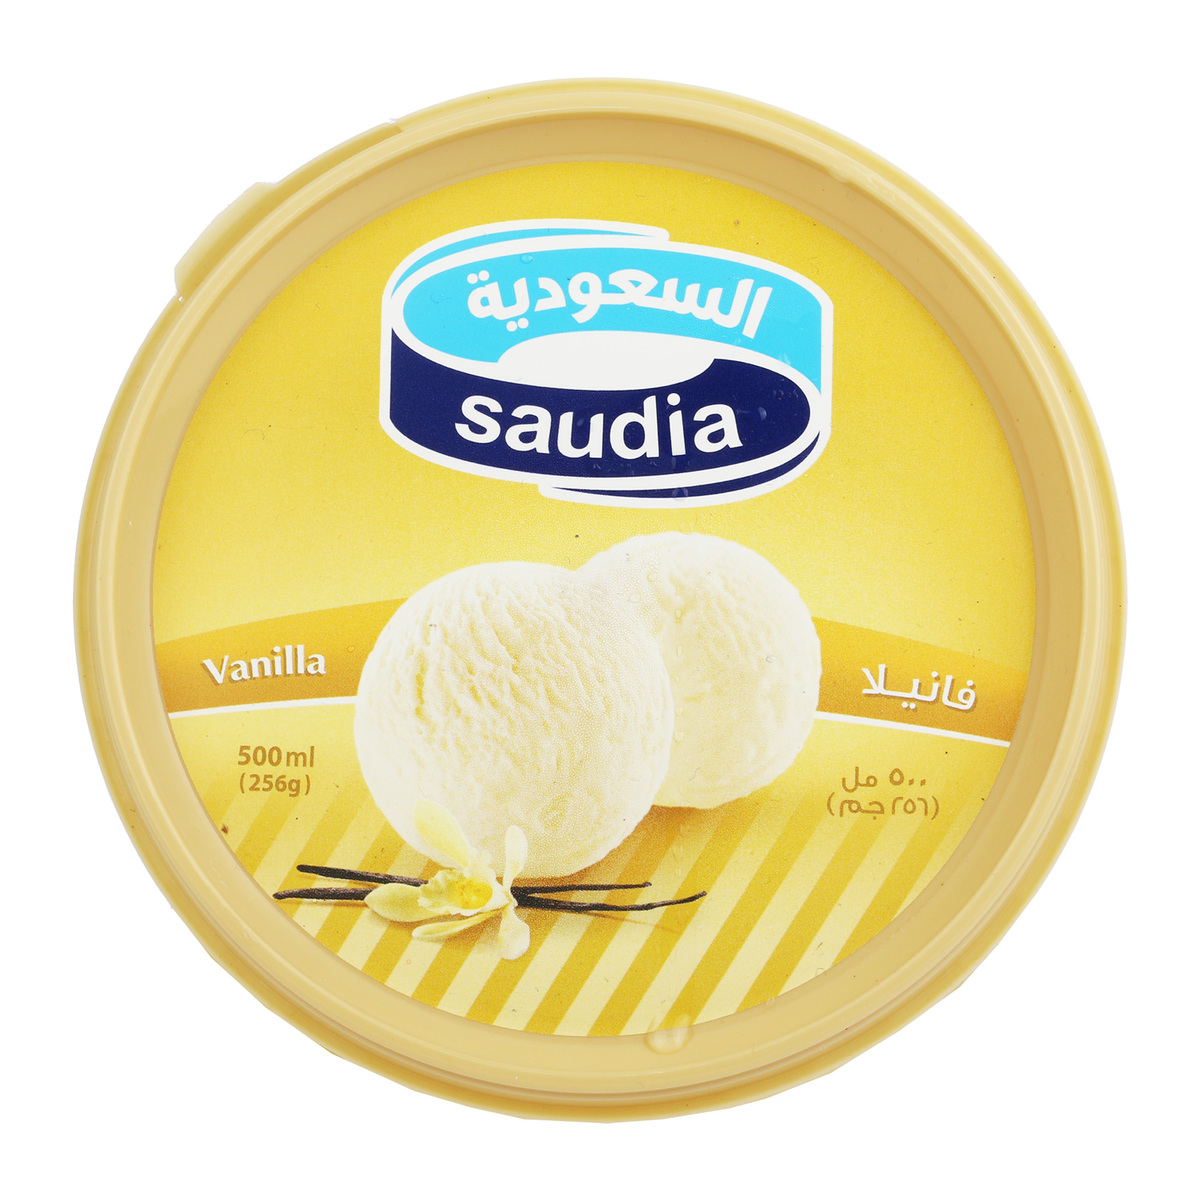 Saudia Vanilla Ice Cream 500ml